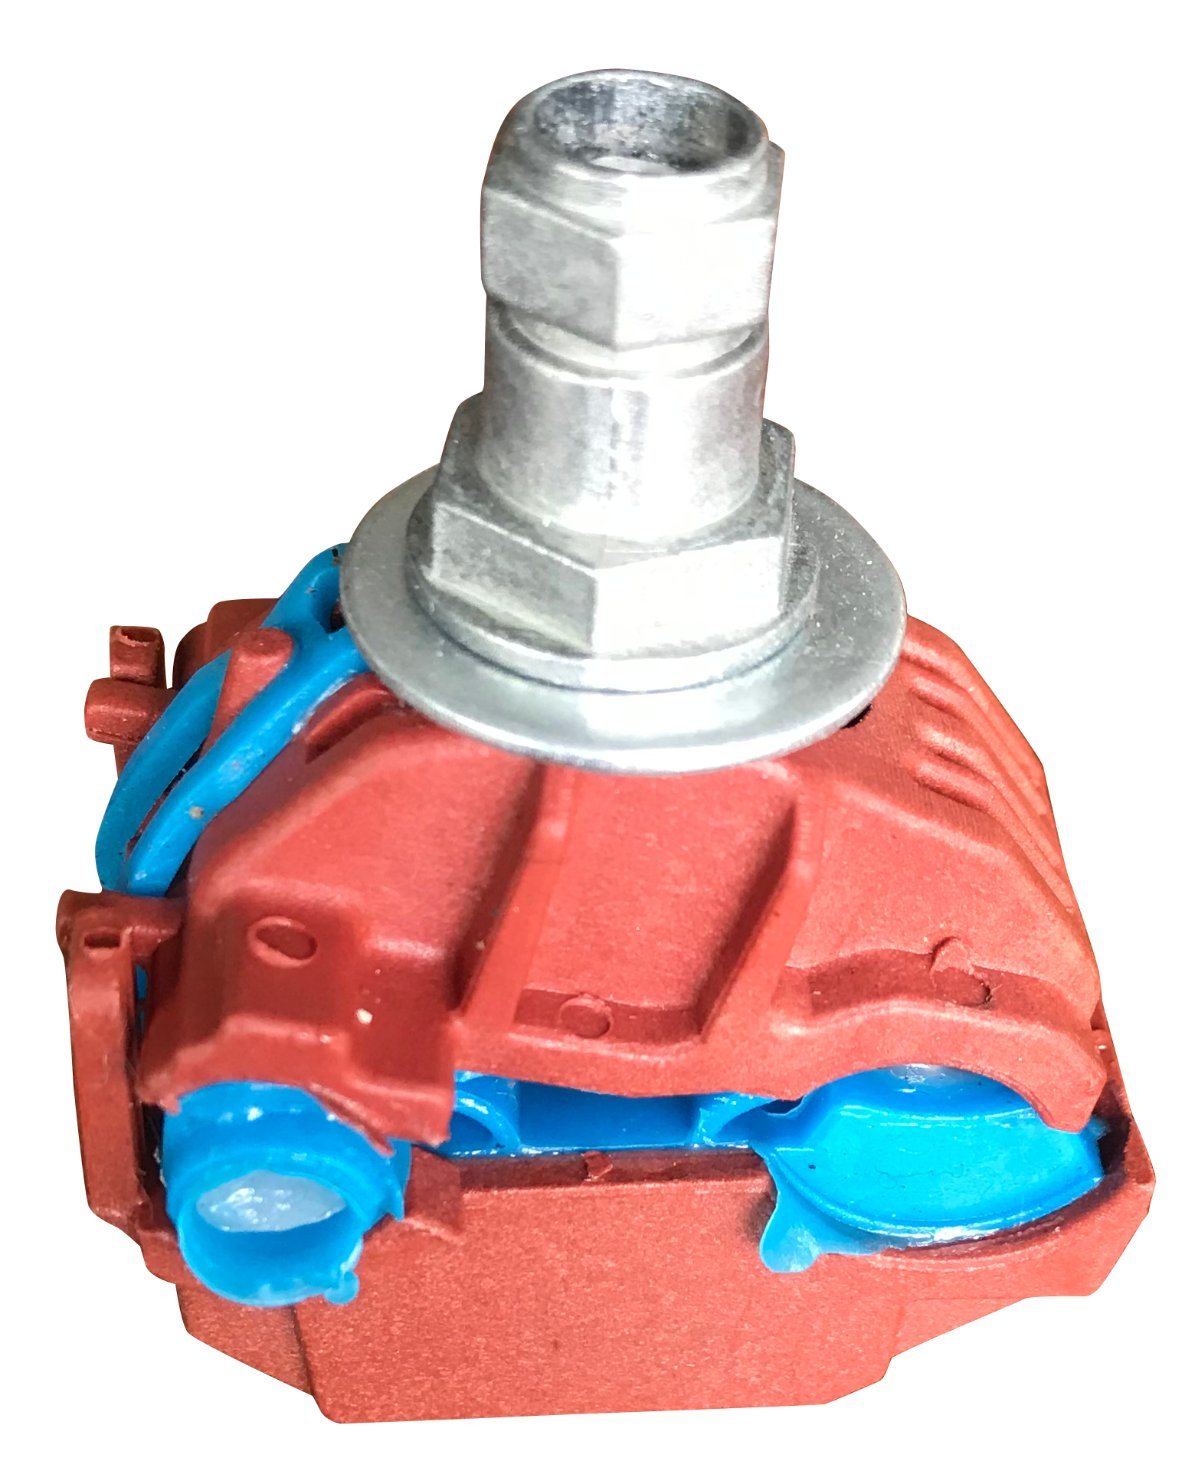 
                Jma101 Fire-Retardant rouge du connecteur de perçage isolante
            